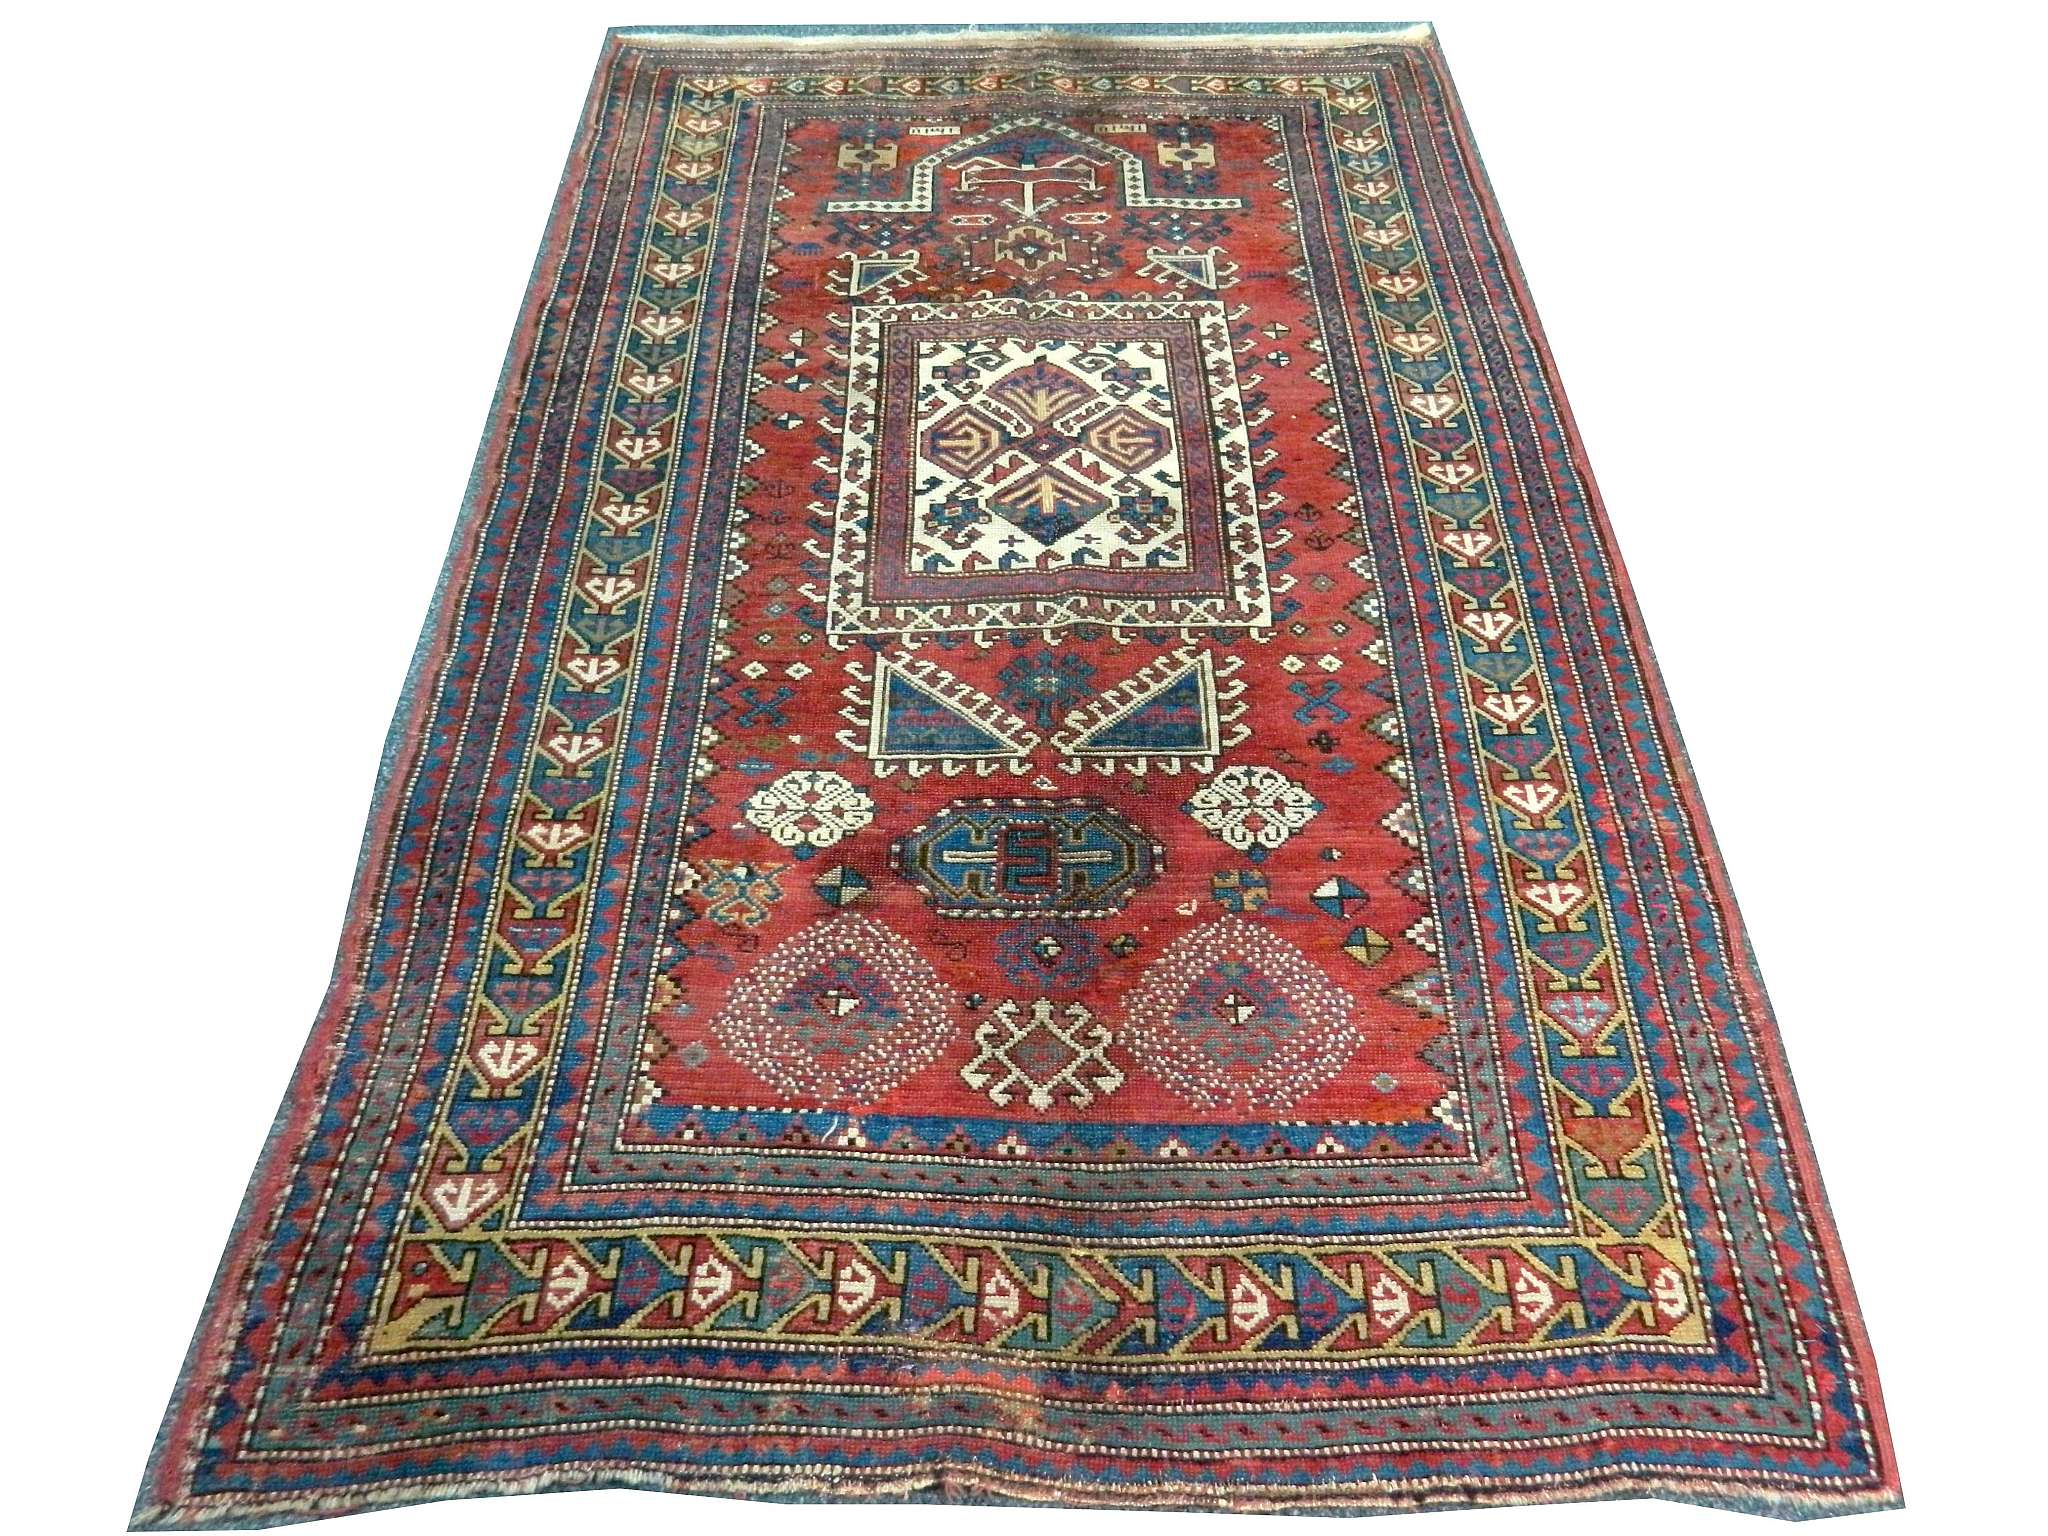 Caucasian Kazak rug, 1.89m x 1.24m, condition rati